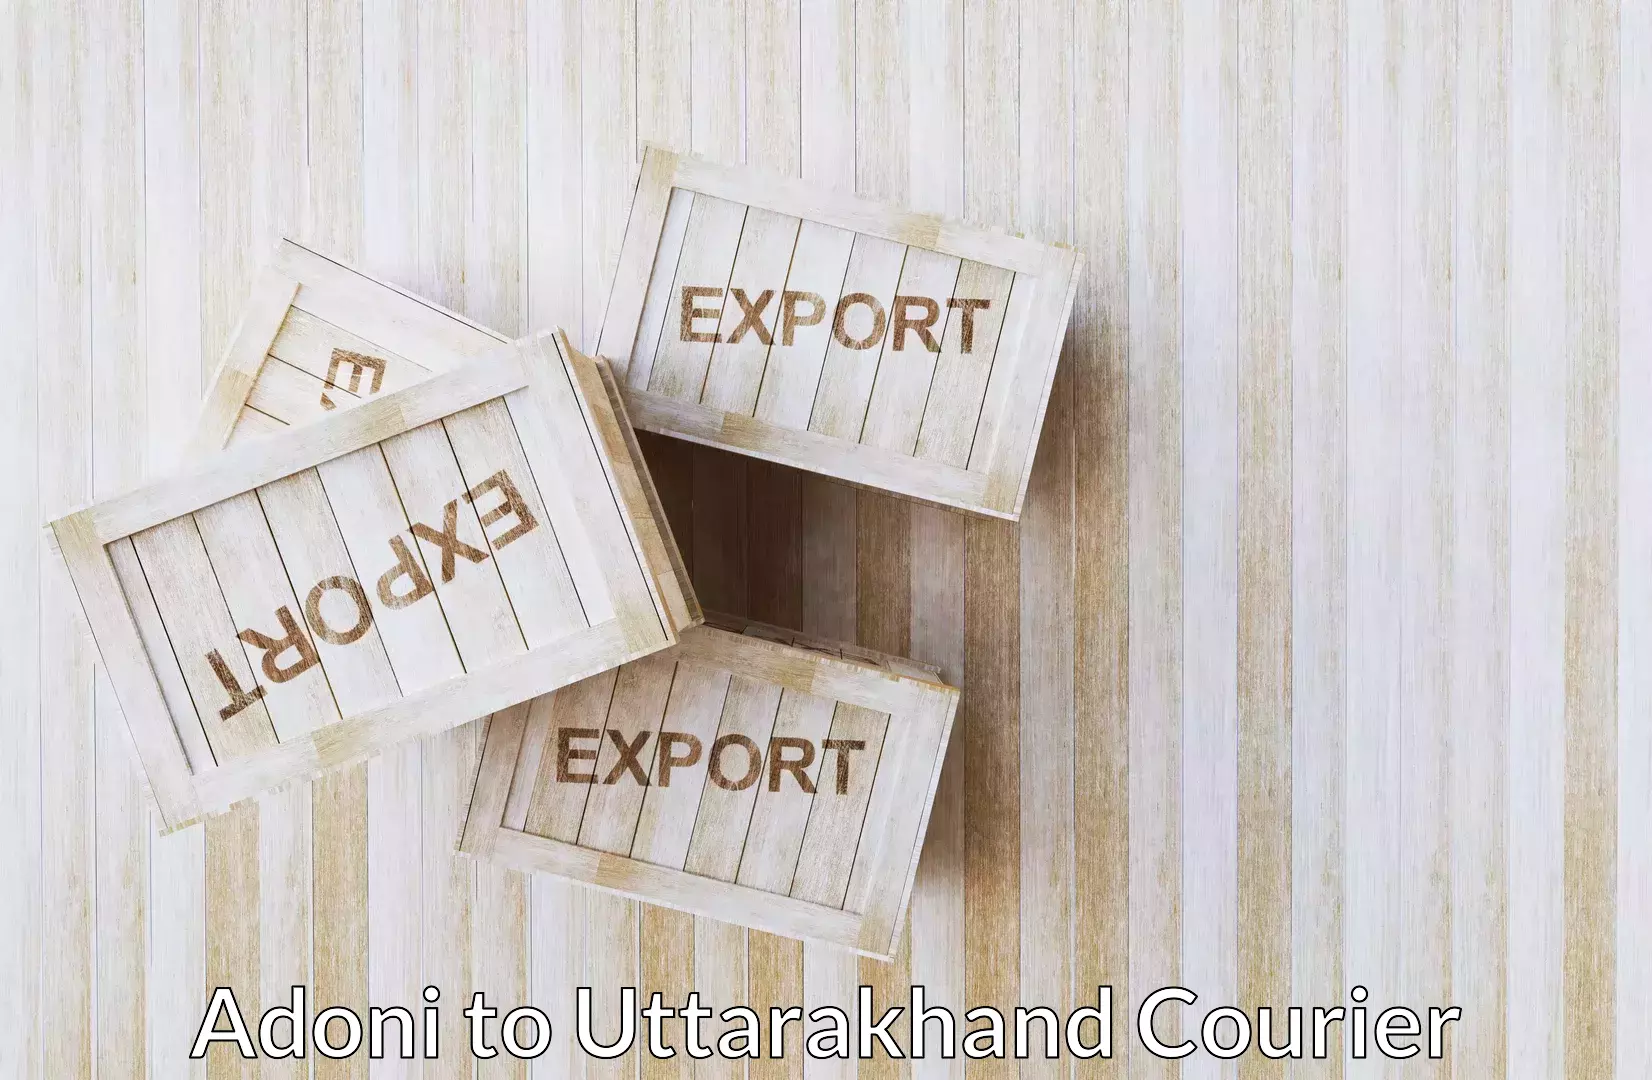 Household moving experts Adoni to Uttarakhand